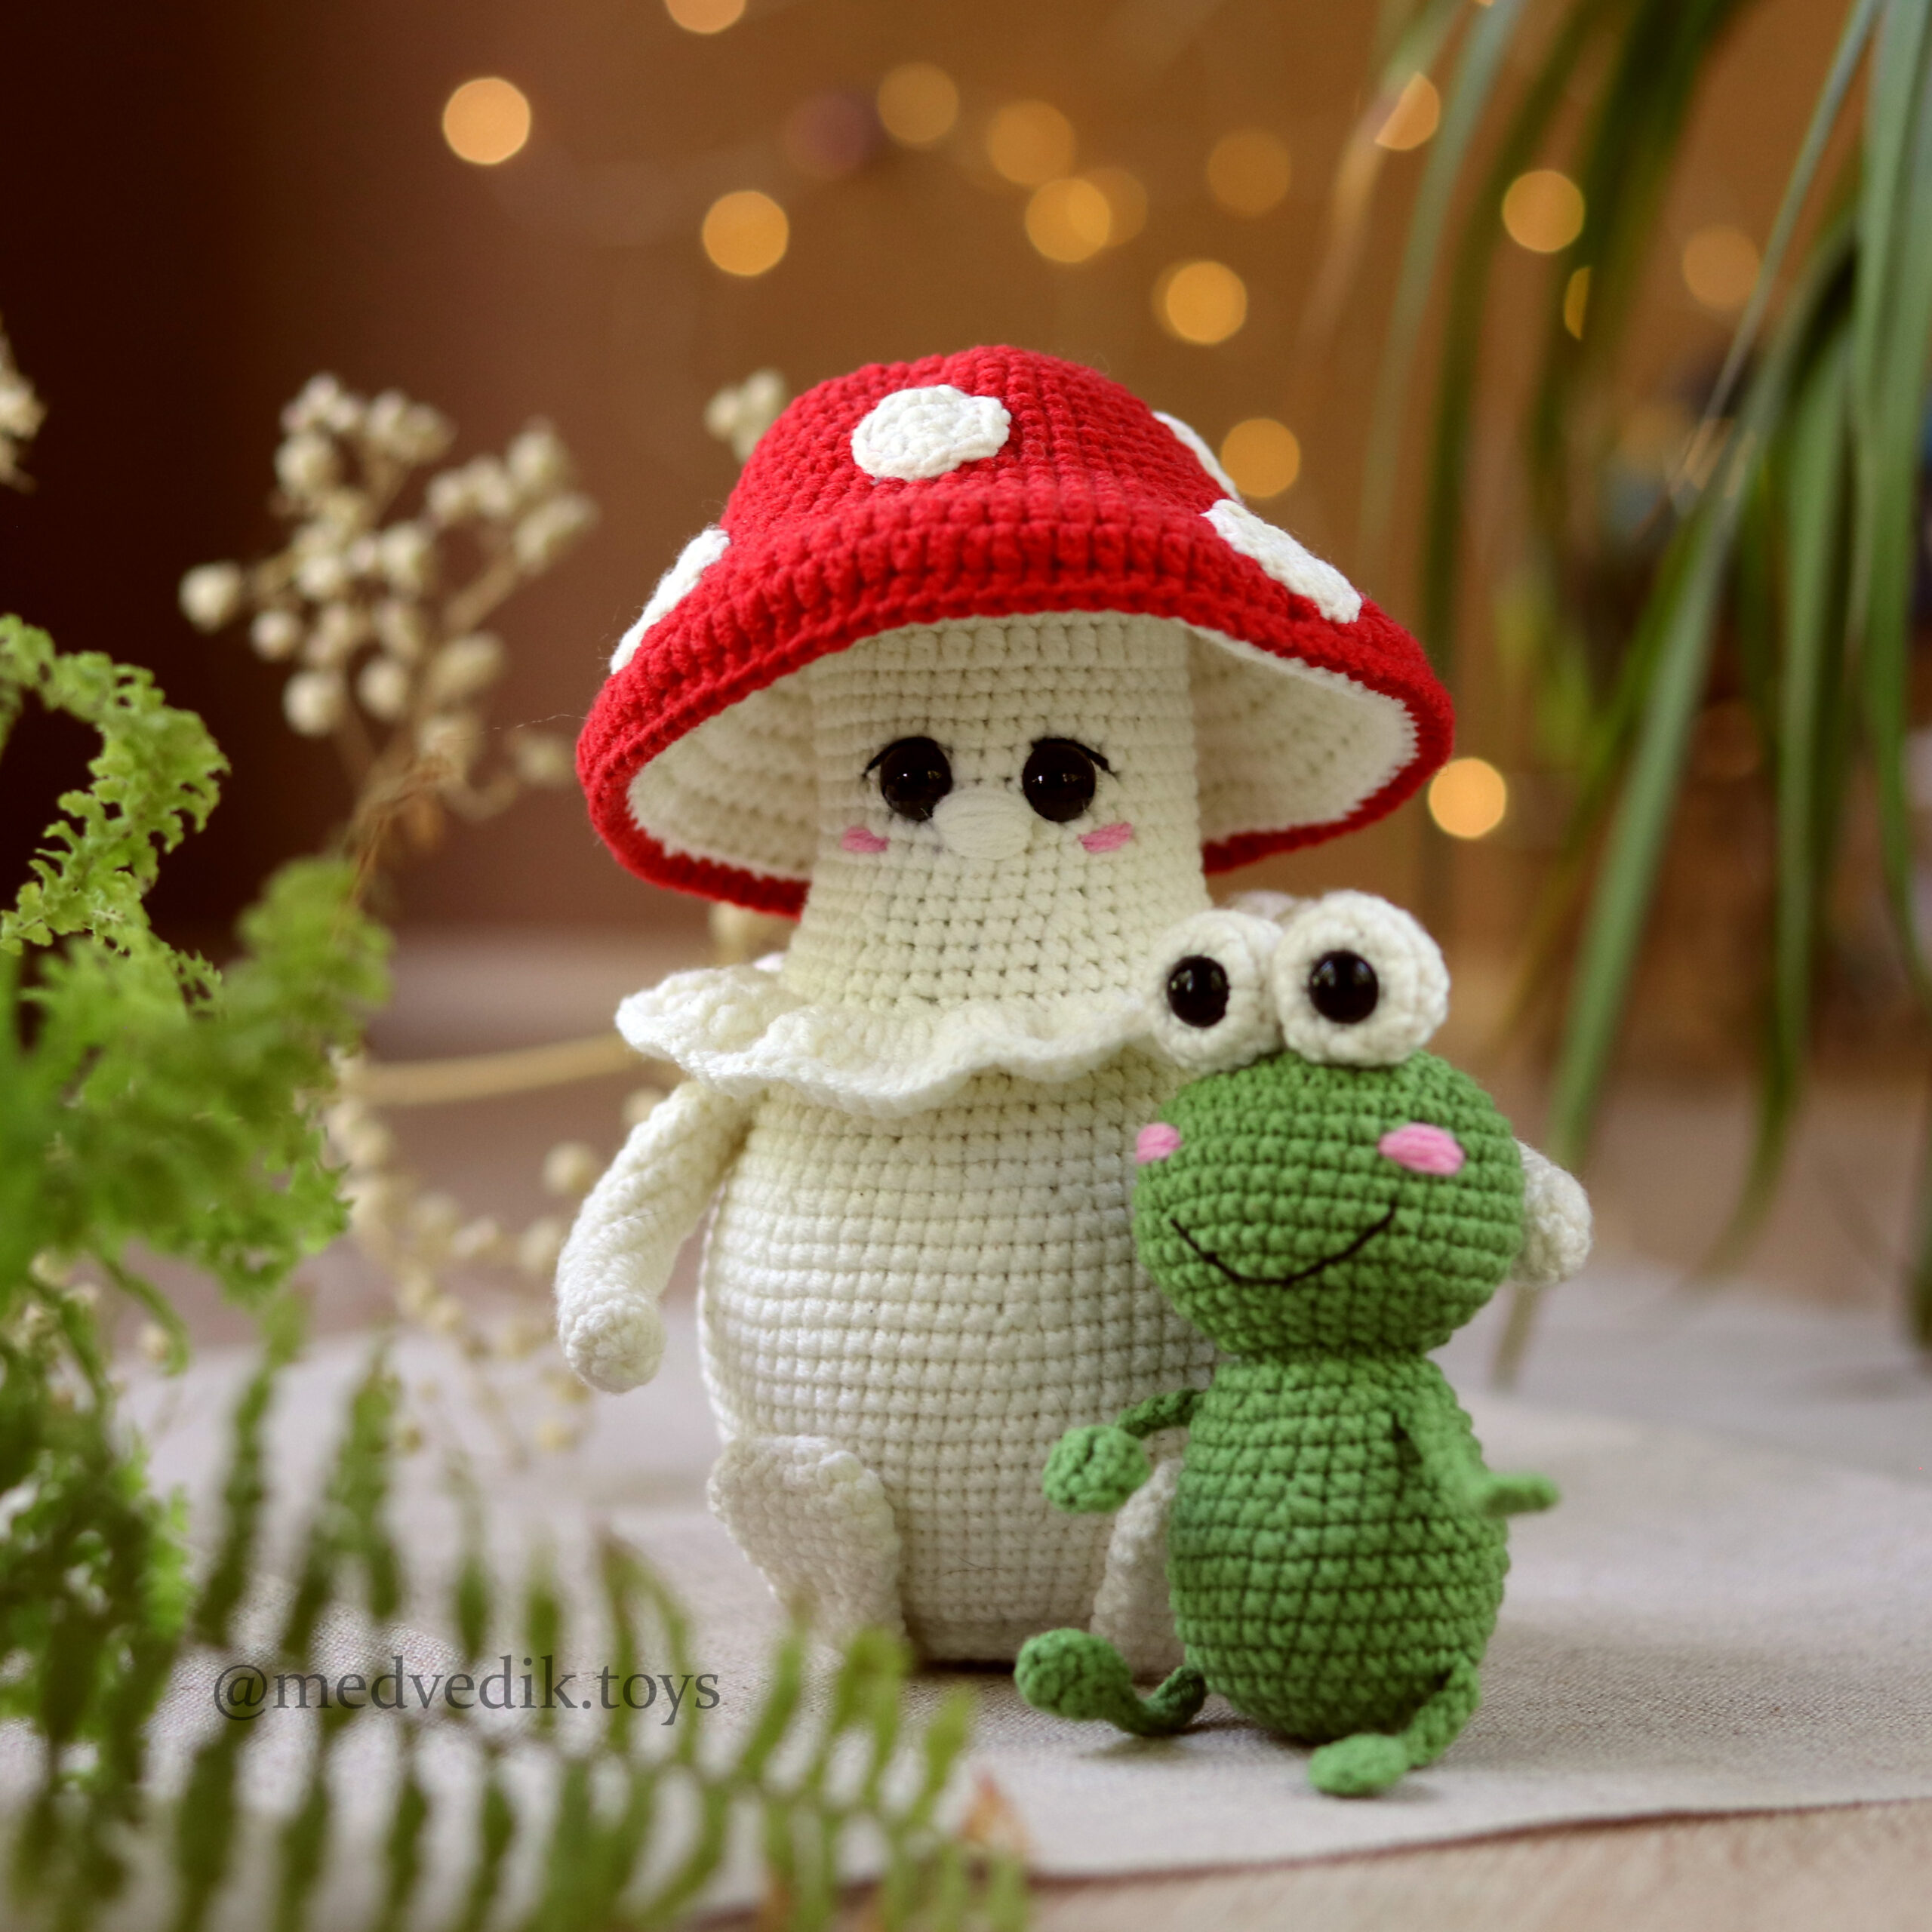 17 of The Cutest Crochet Mushroom Patterns - Easy Crochet Patterns